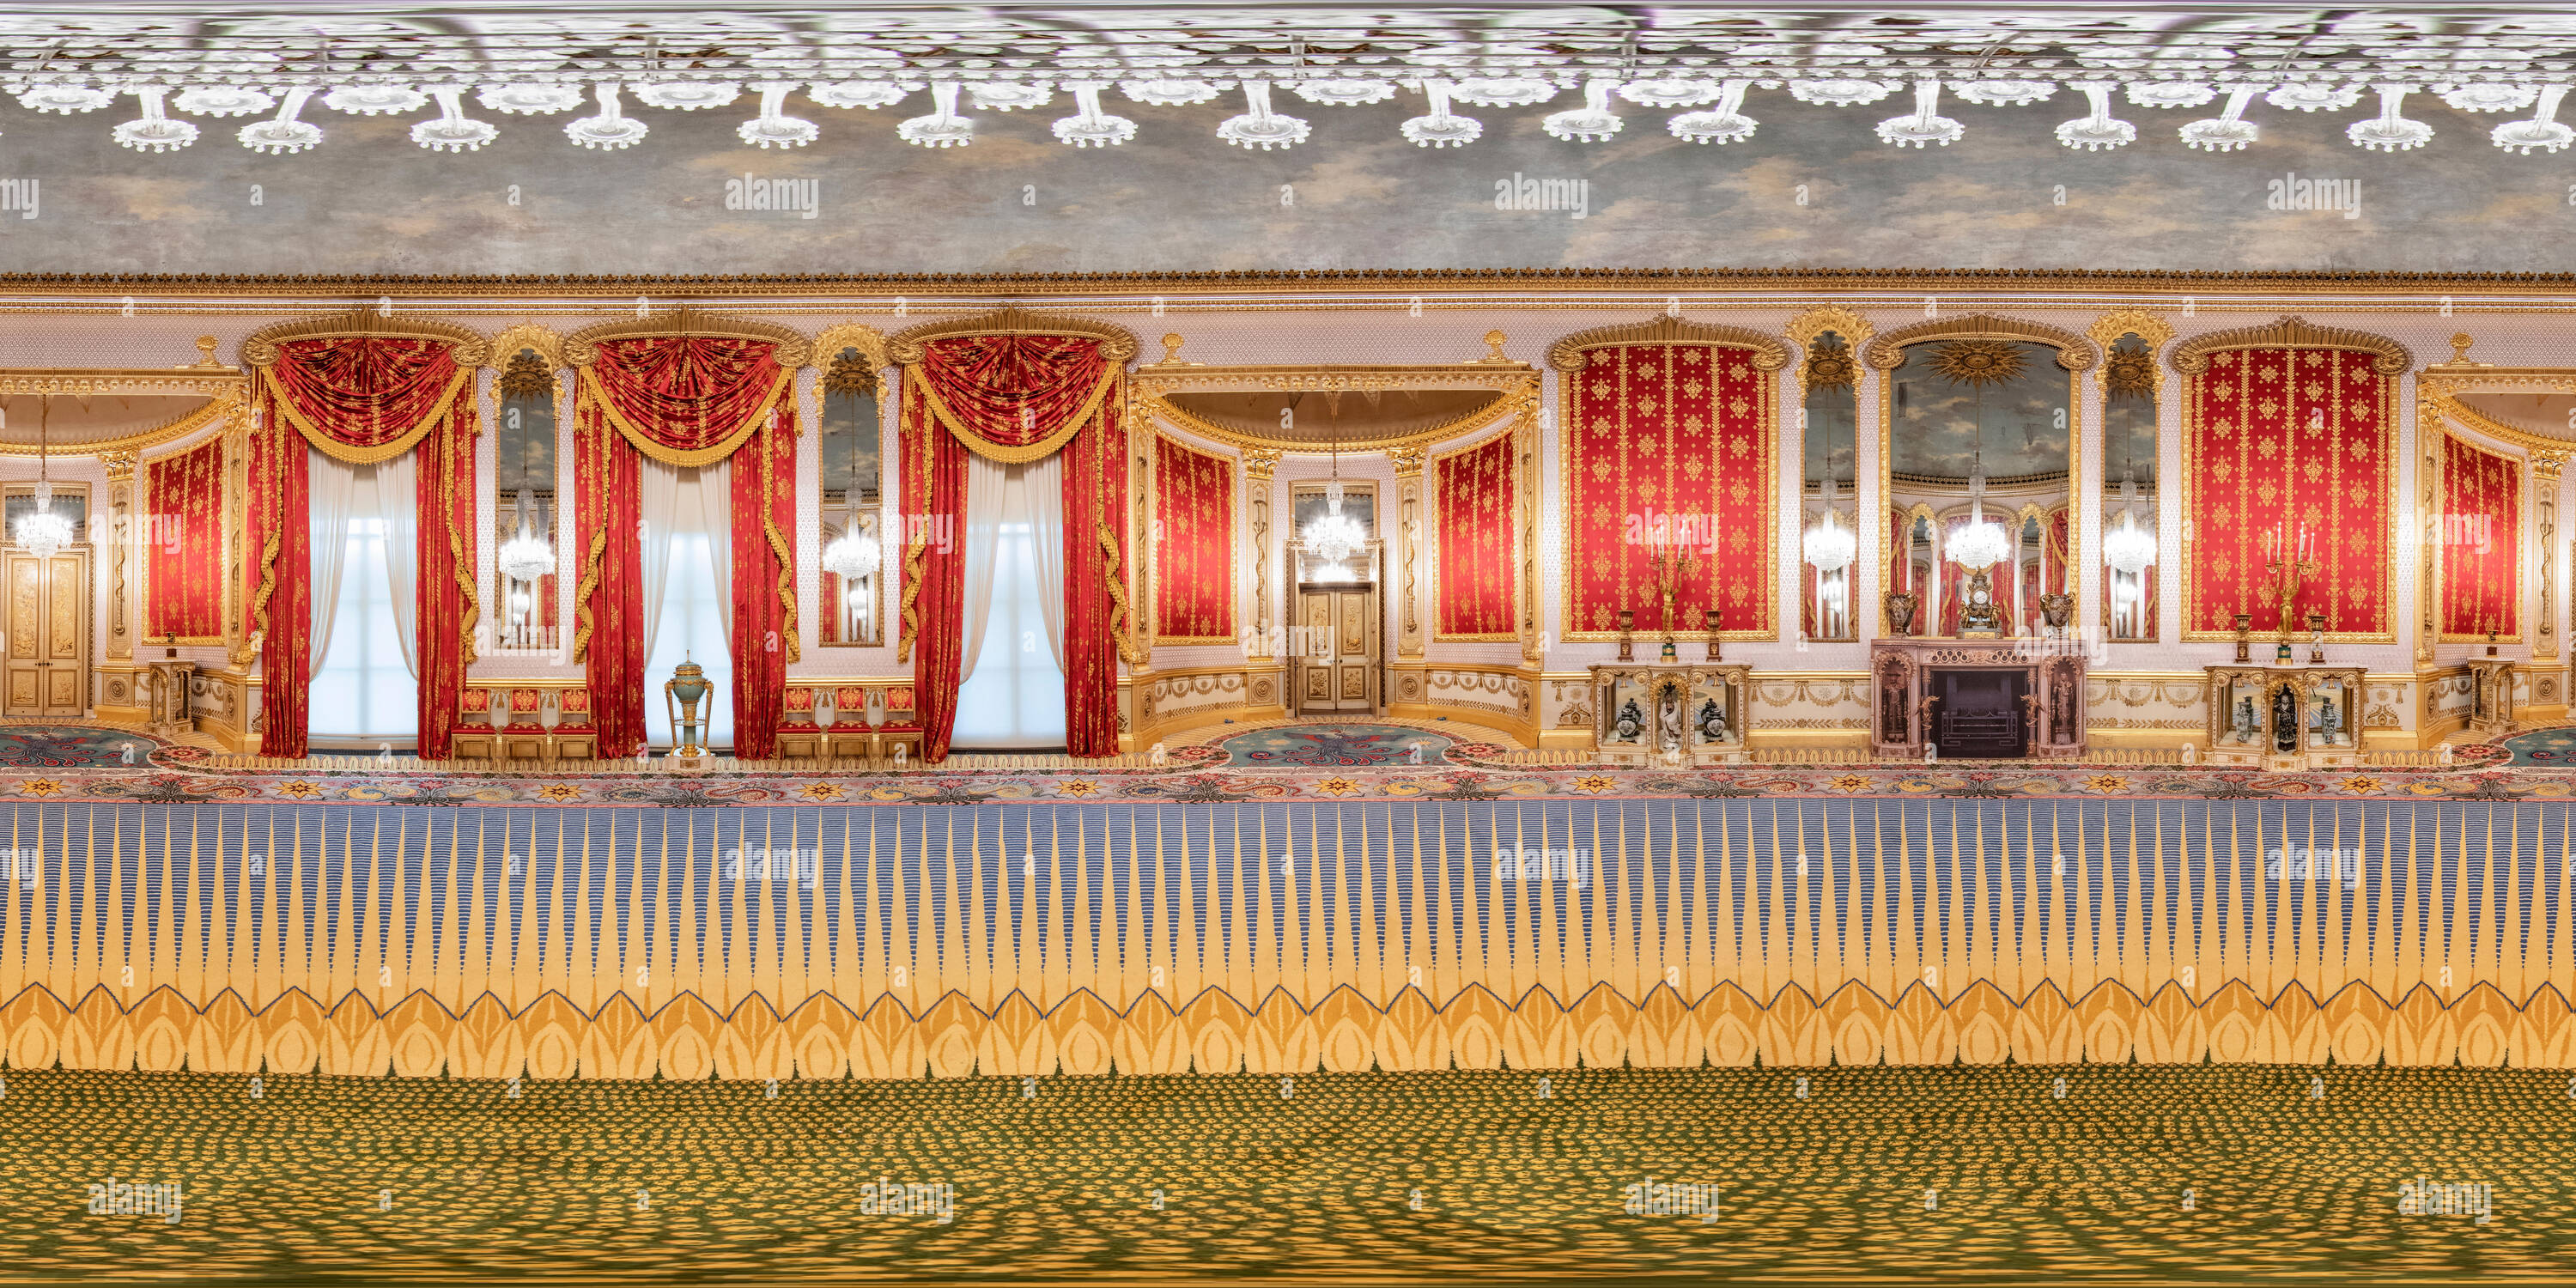 Visualizzazione panoramica a 360 gradi di Una vista 360 del Salone nel padiglione Reale Brighton al completamento del restauro it 2018